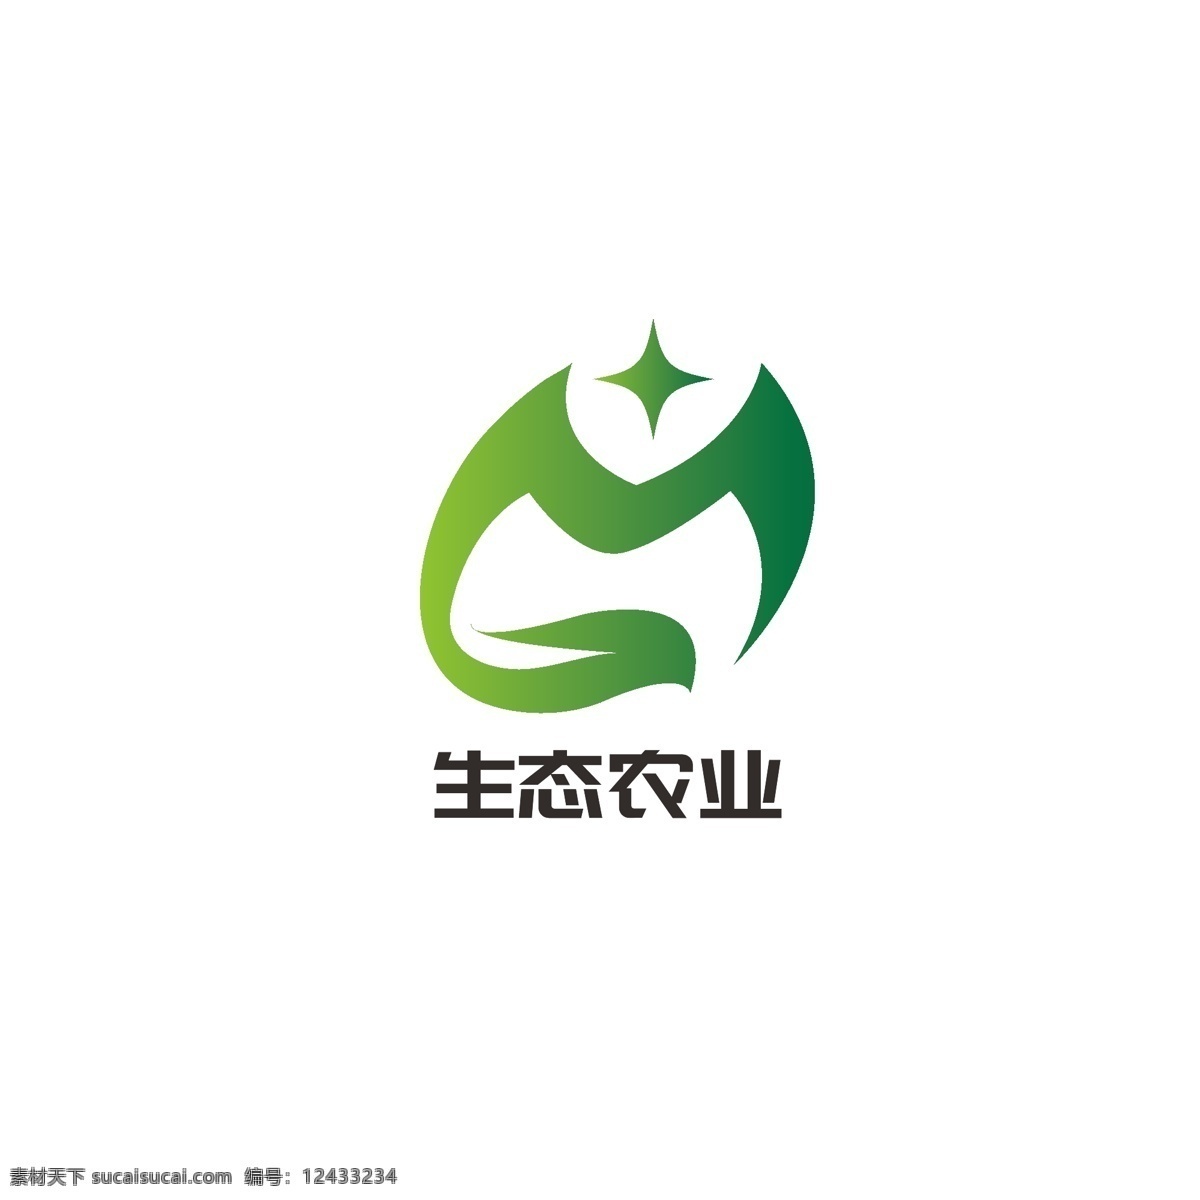 生态农业 logo 生态 农业 健康 绿叶 发展 有机 字母m